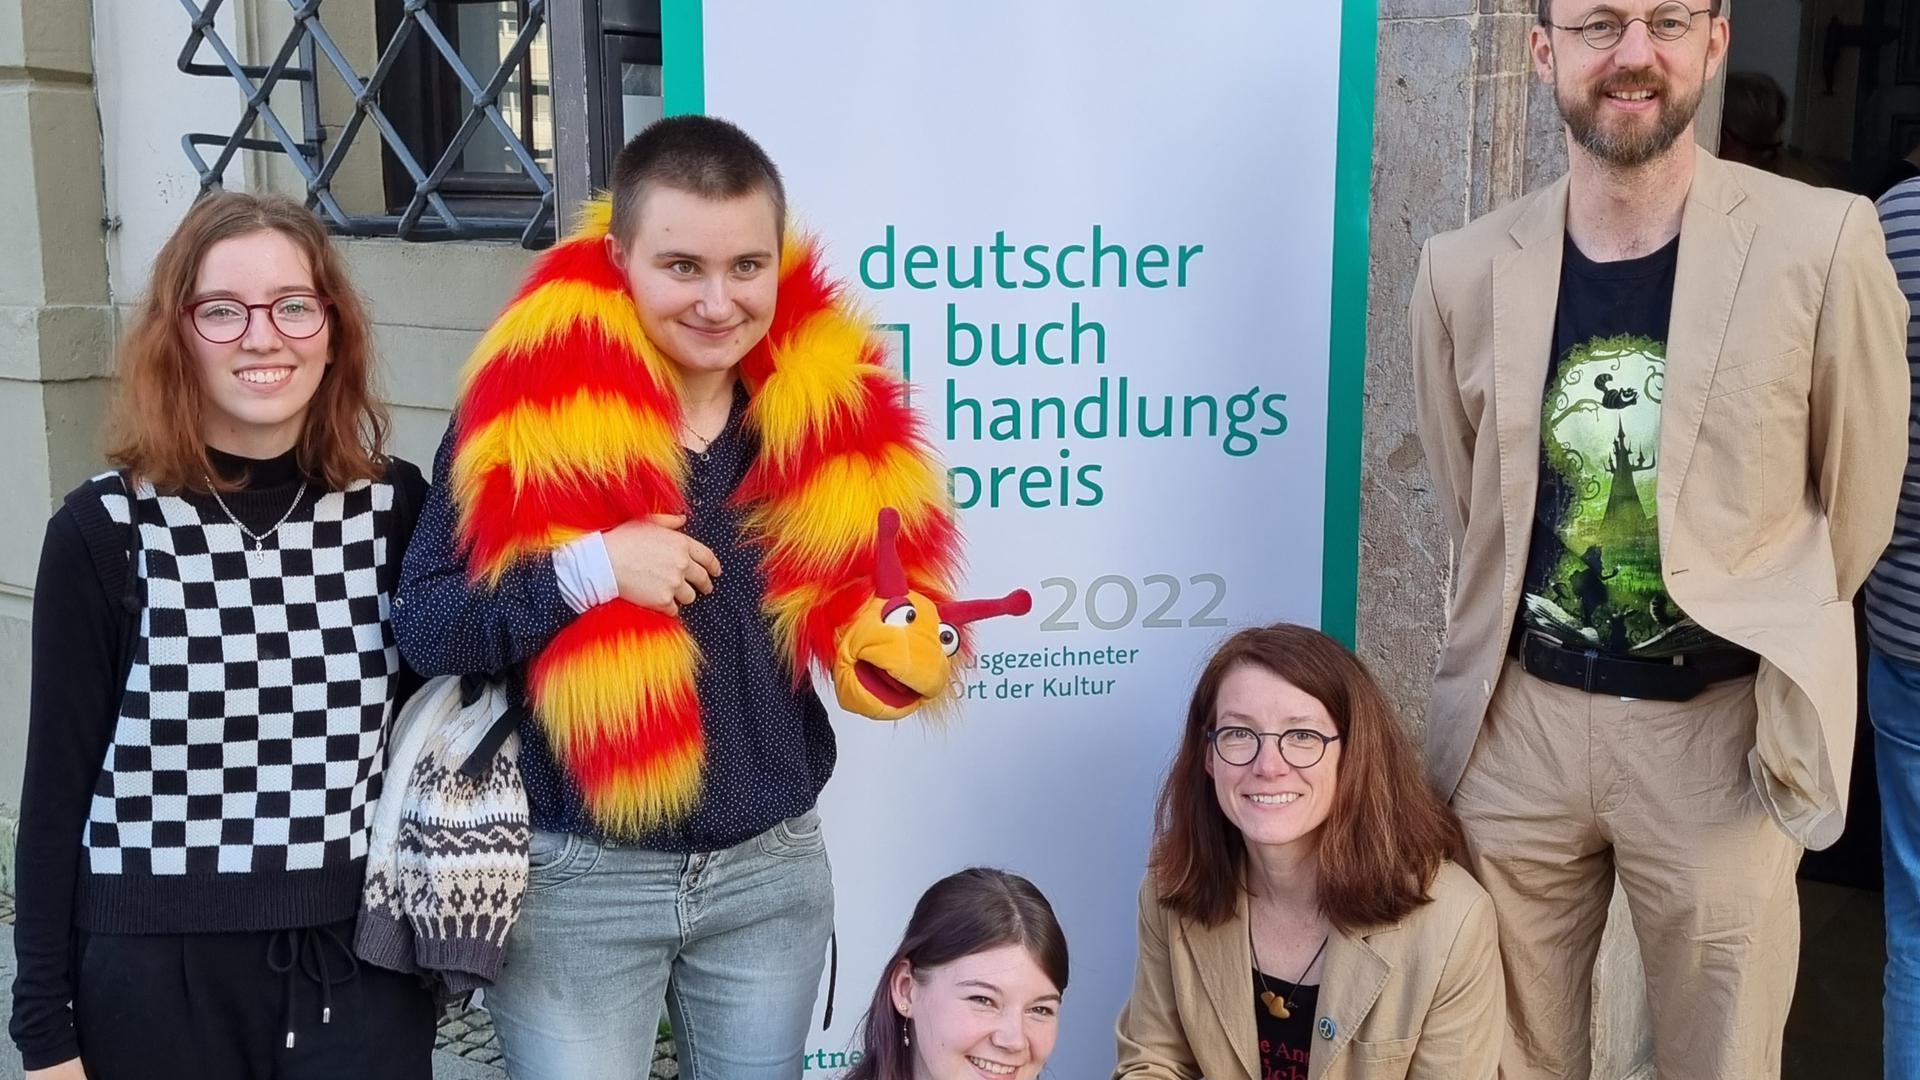  Buchhändler Josua Straß (rechts) mit seinen drei Azubis (von links) Emilia Zeitvogel, Anneli Fleig, Hannah Kunkelmann und seiner Kollegin Tanja Eger,